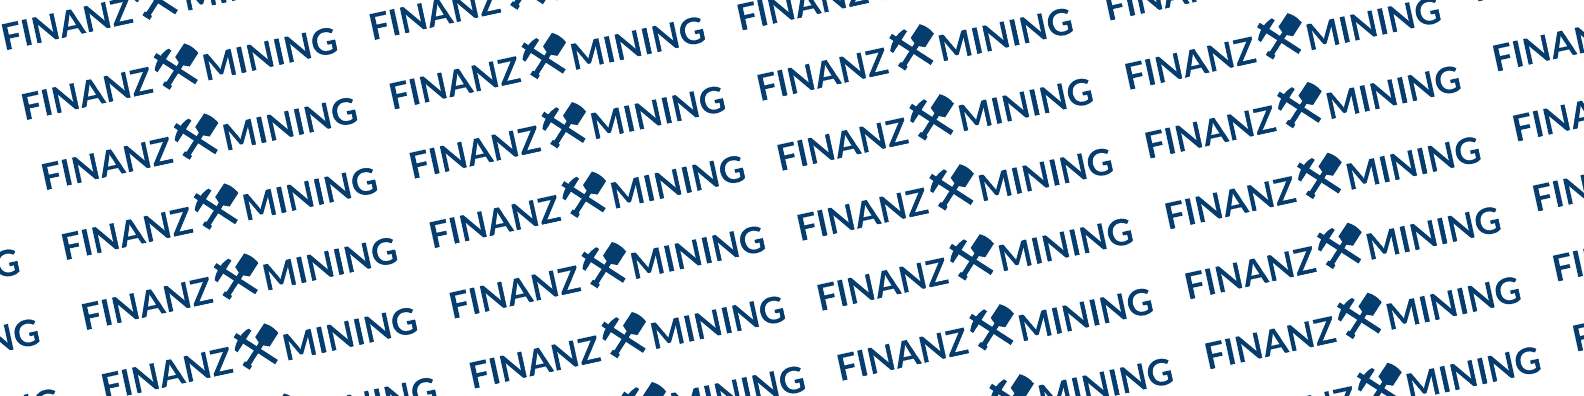 Finanzmining / startup von Berlin / Background